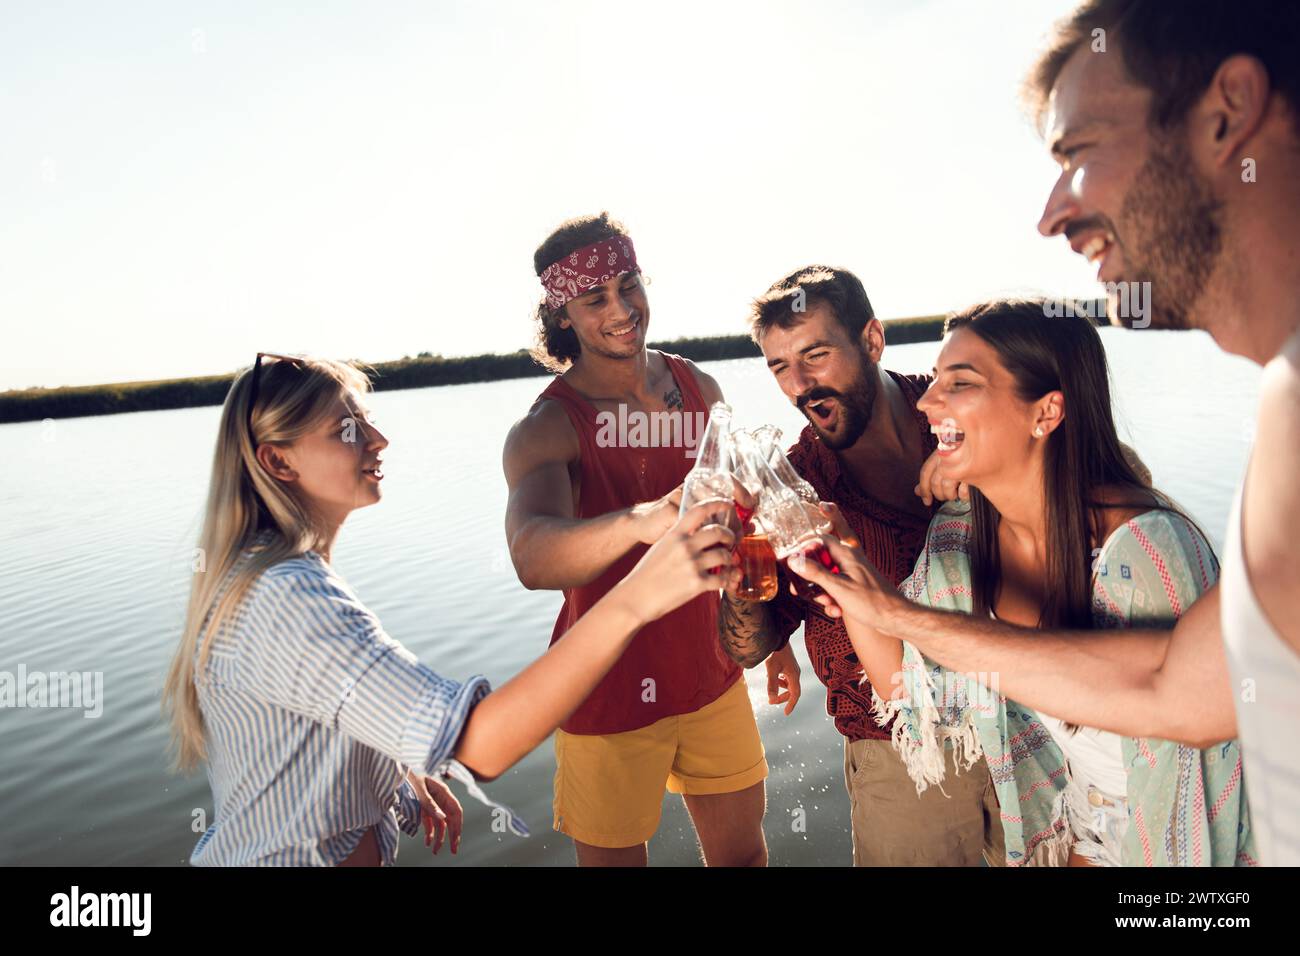 Porträt von Freunden, die auf einem Pier stehen und mit alkoholischem Getränk anstoßen und einen Sommertag am See genießen. Stockfoto